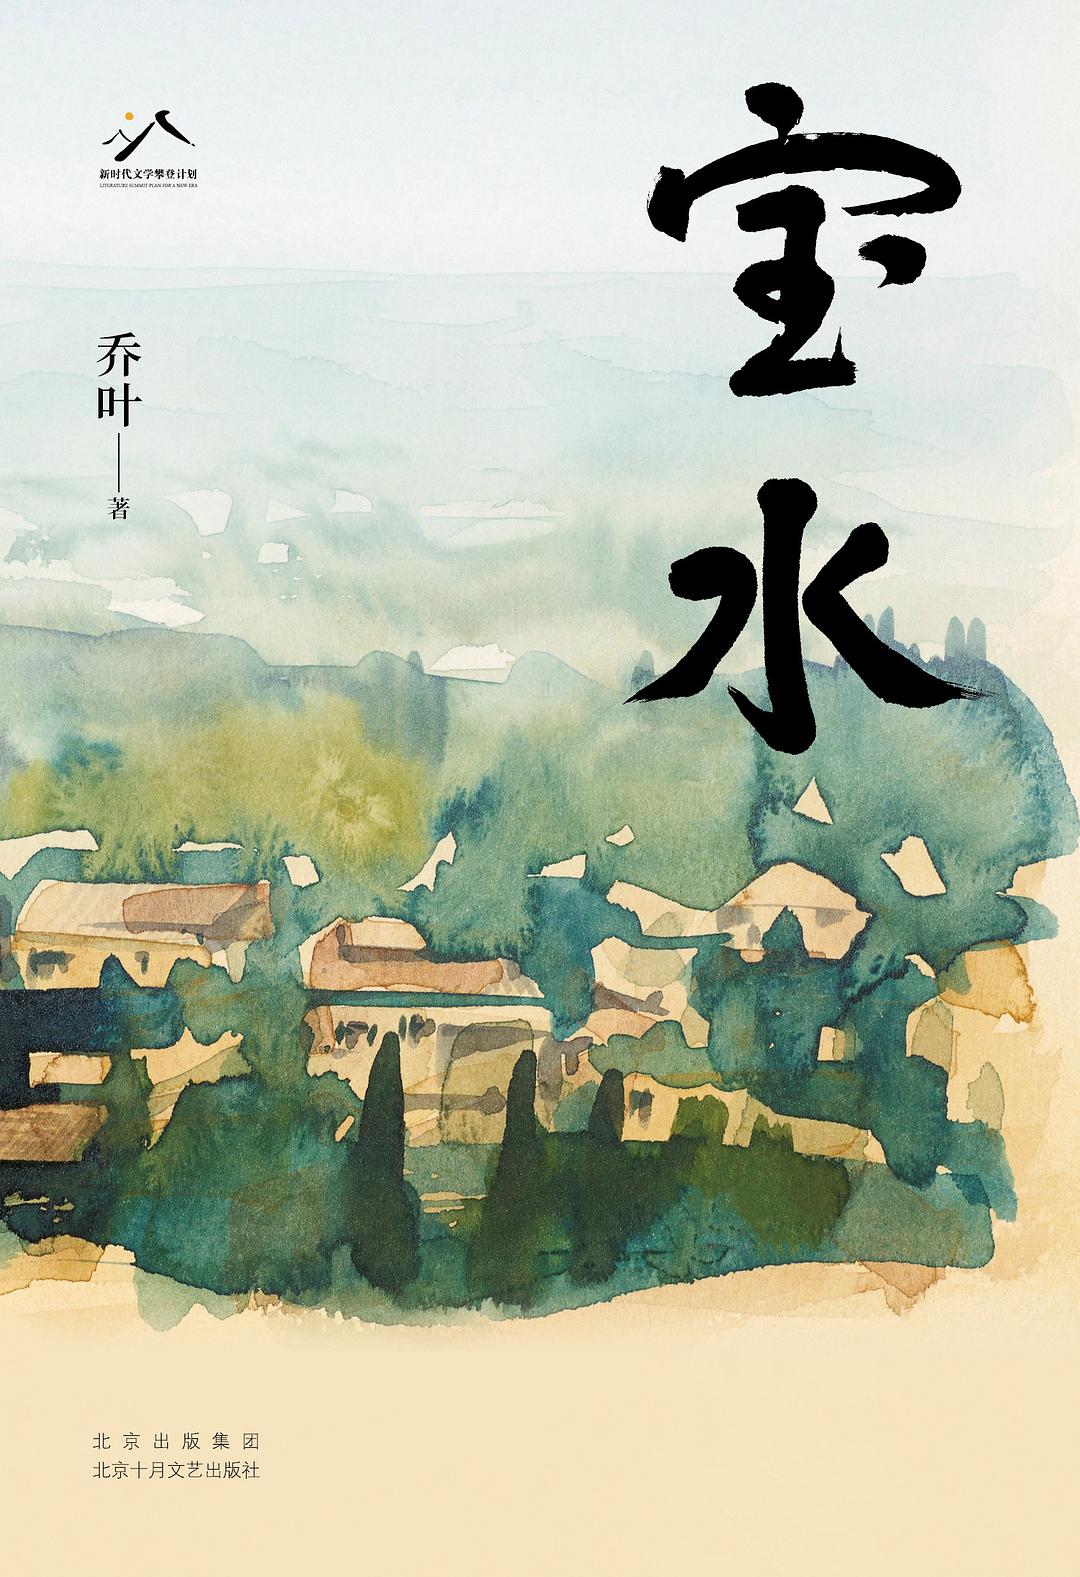 《宝水》由北京十月文艺出版社出版